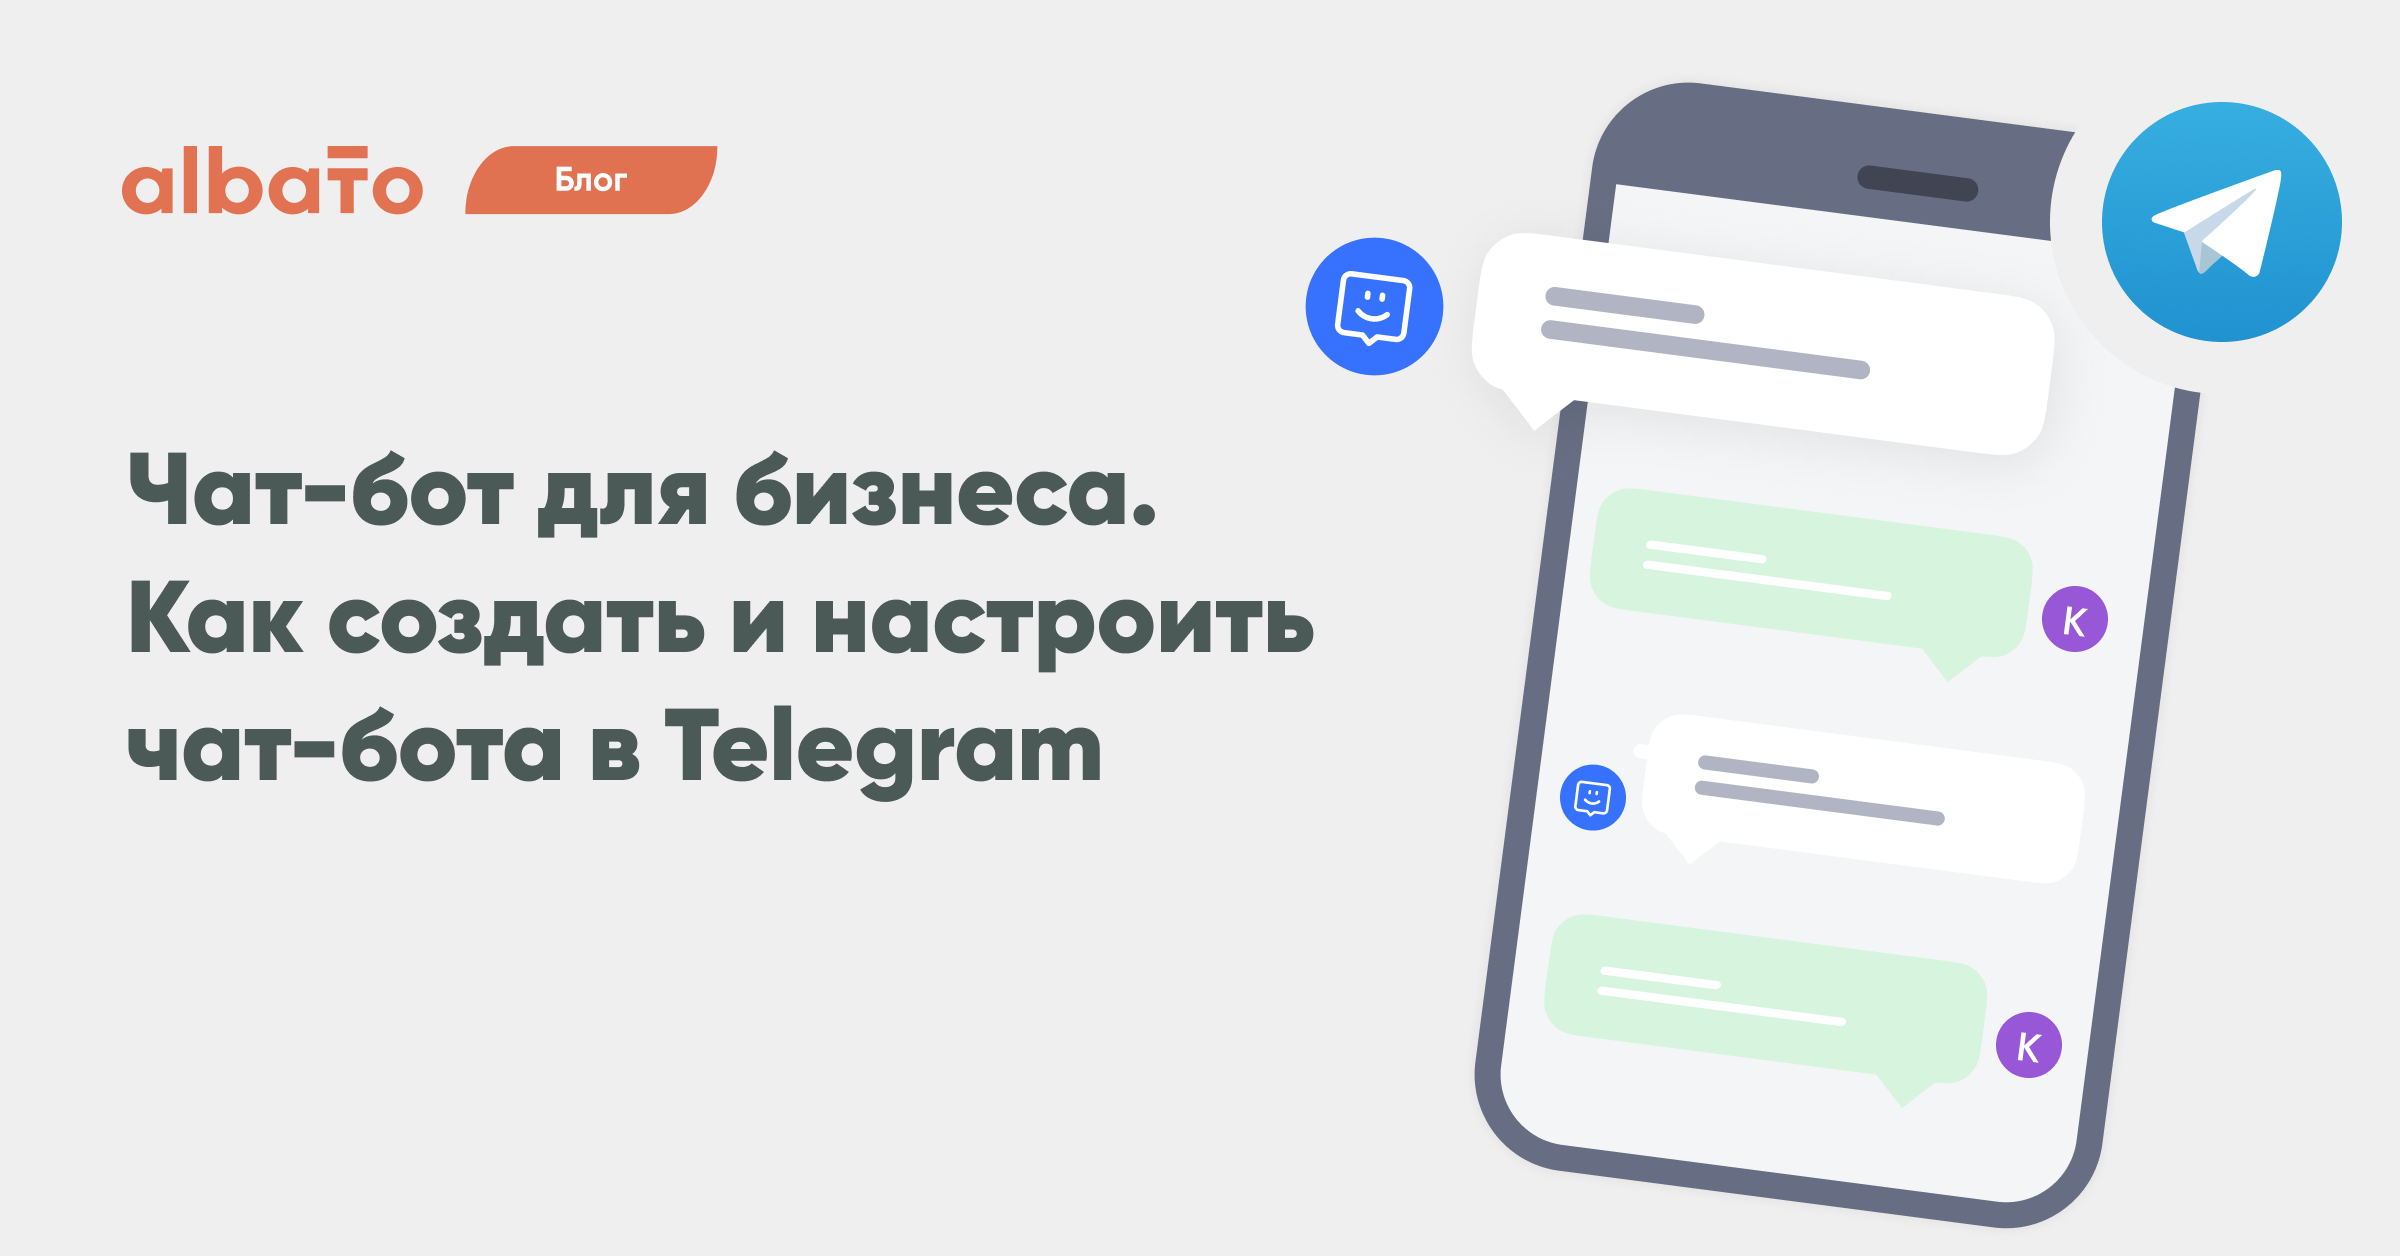 Чат боты телеграм для бизнеса - как создать и настроить чат бота в telegram,  интеграция чат ботов в бизнес процессы компании| Albato